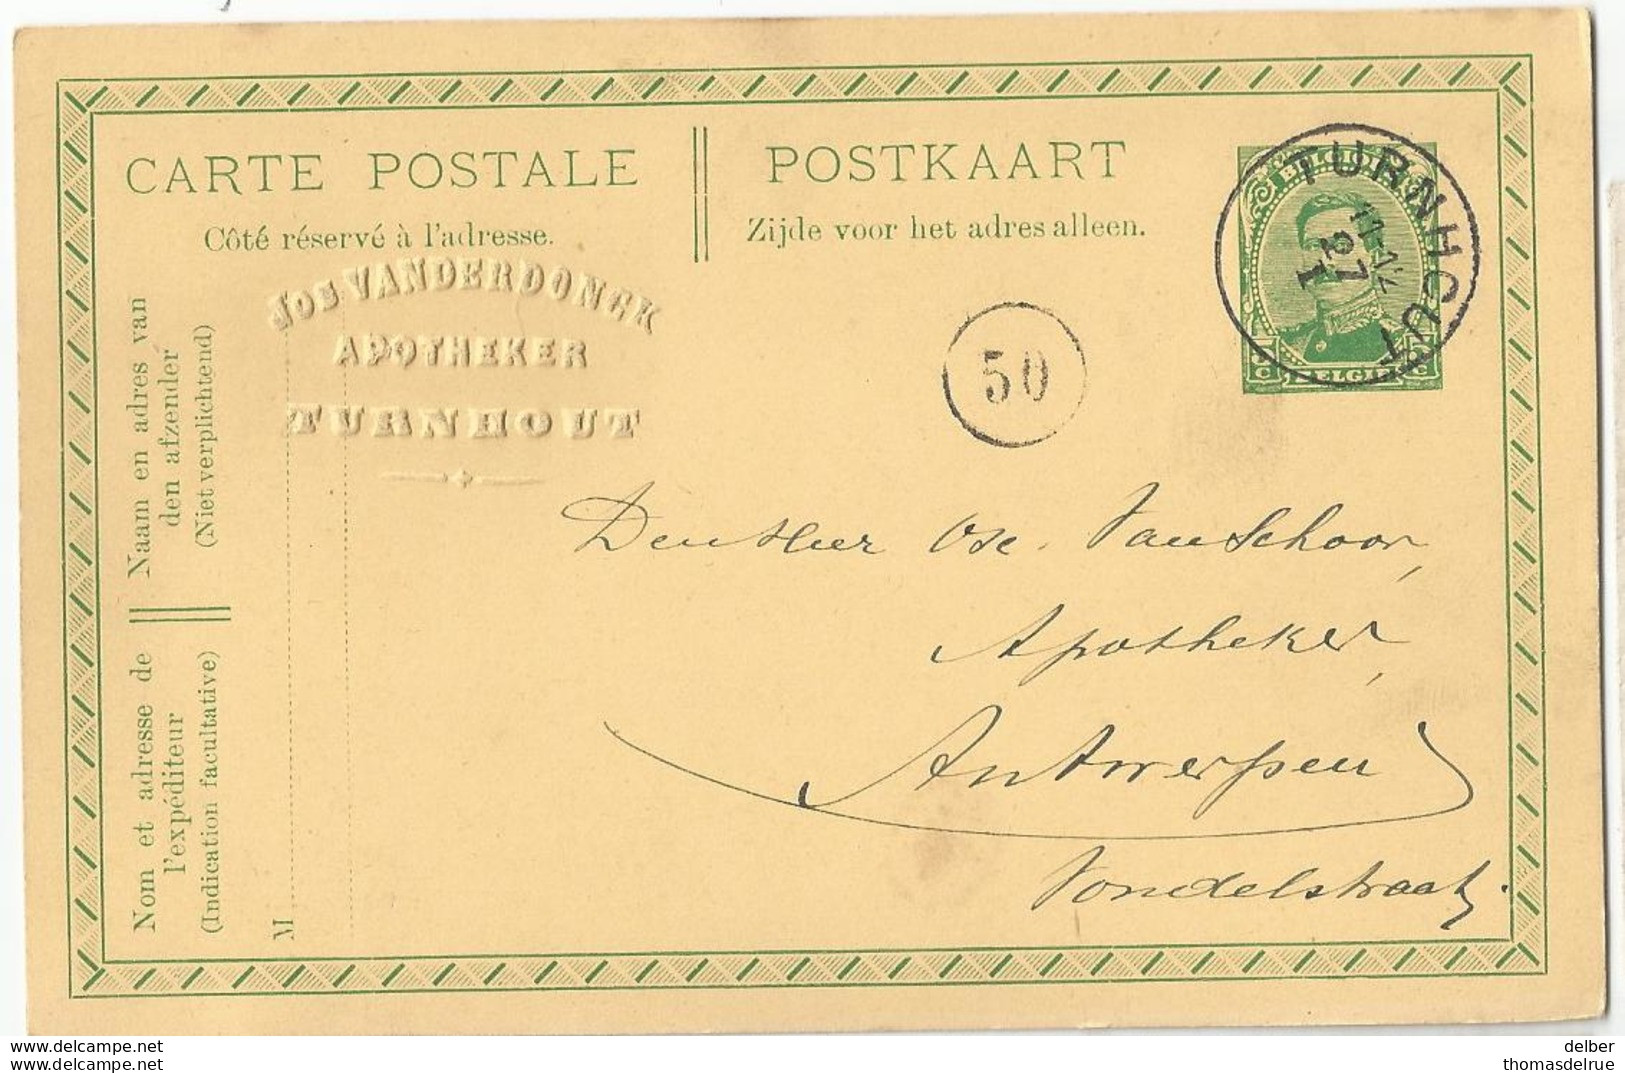 9Dp-431: TURNHOUT 11-12 27 I ___: Geen Jaar: Noodstempel  > Antwerpen - Fortuna (1919)